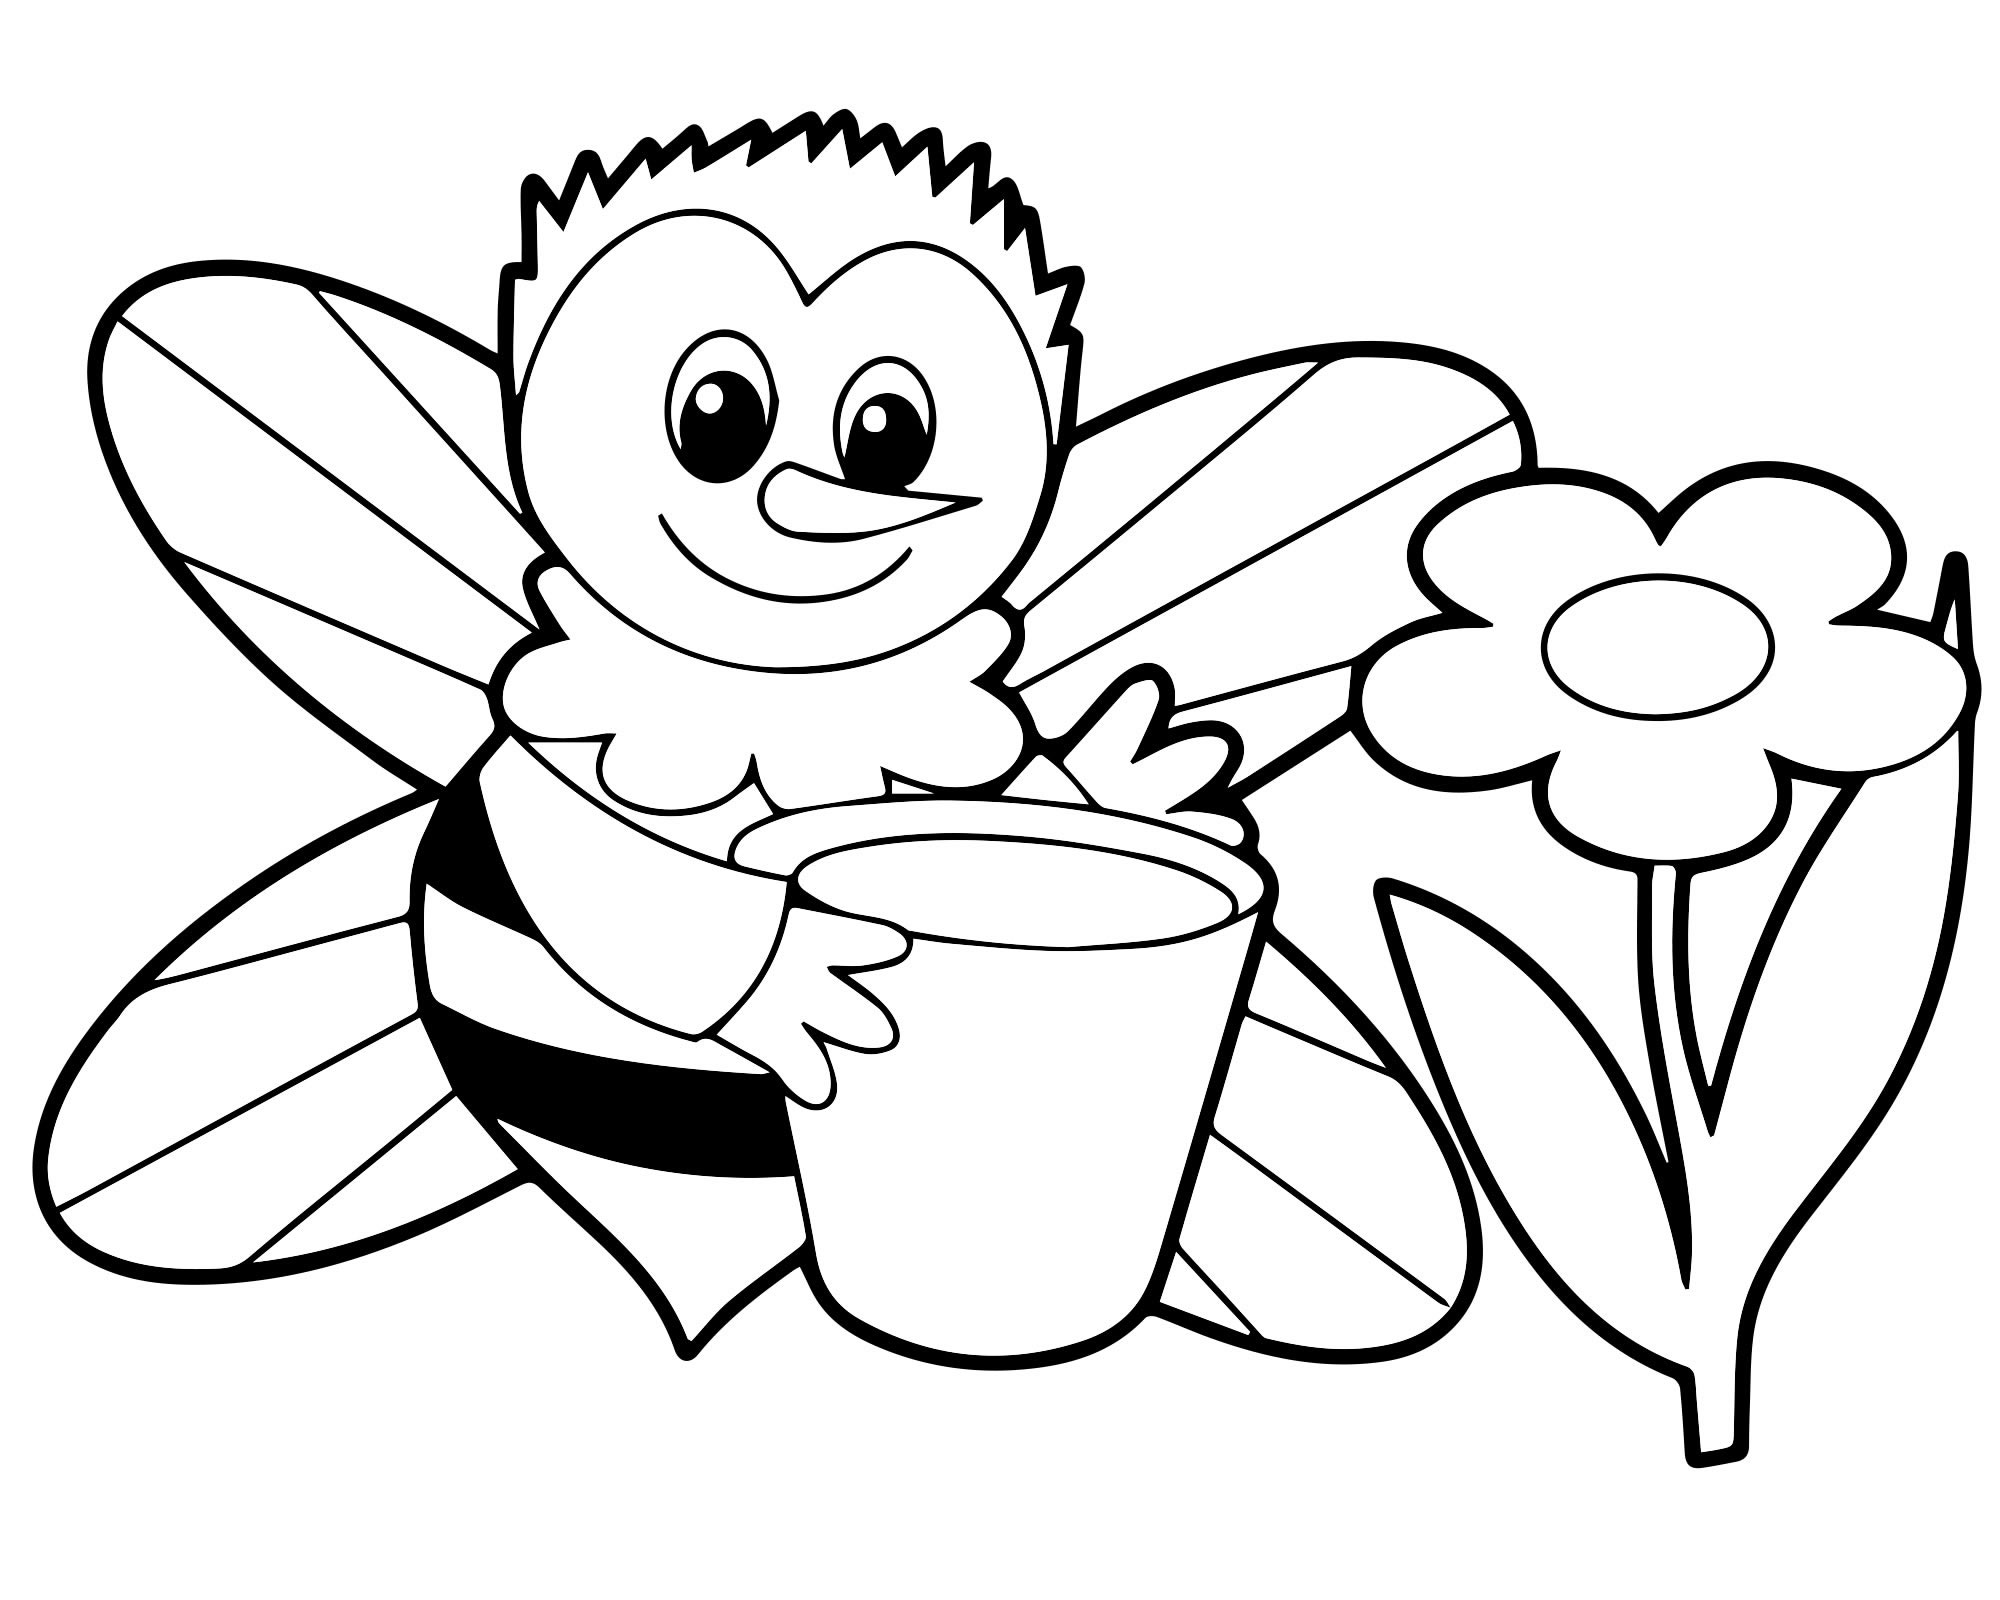 Раскраска картинка пчелки для детей распечатать